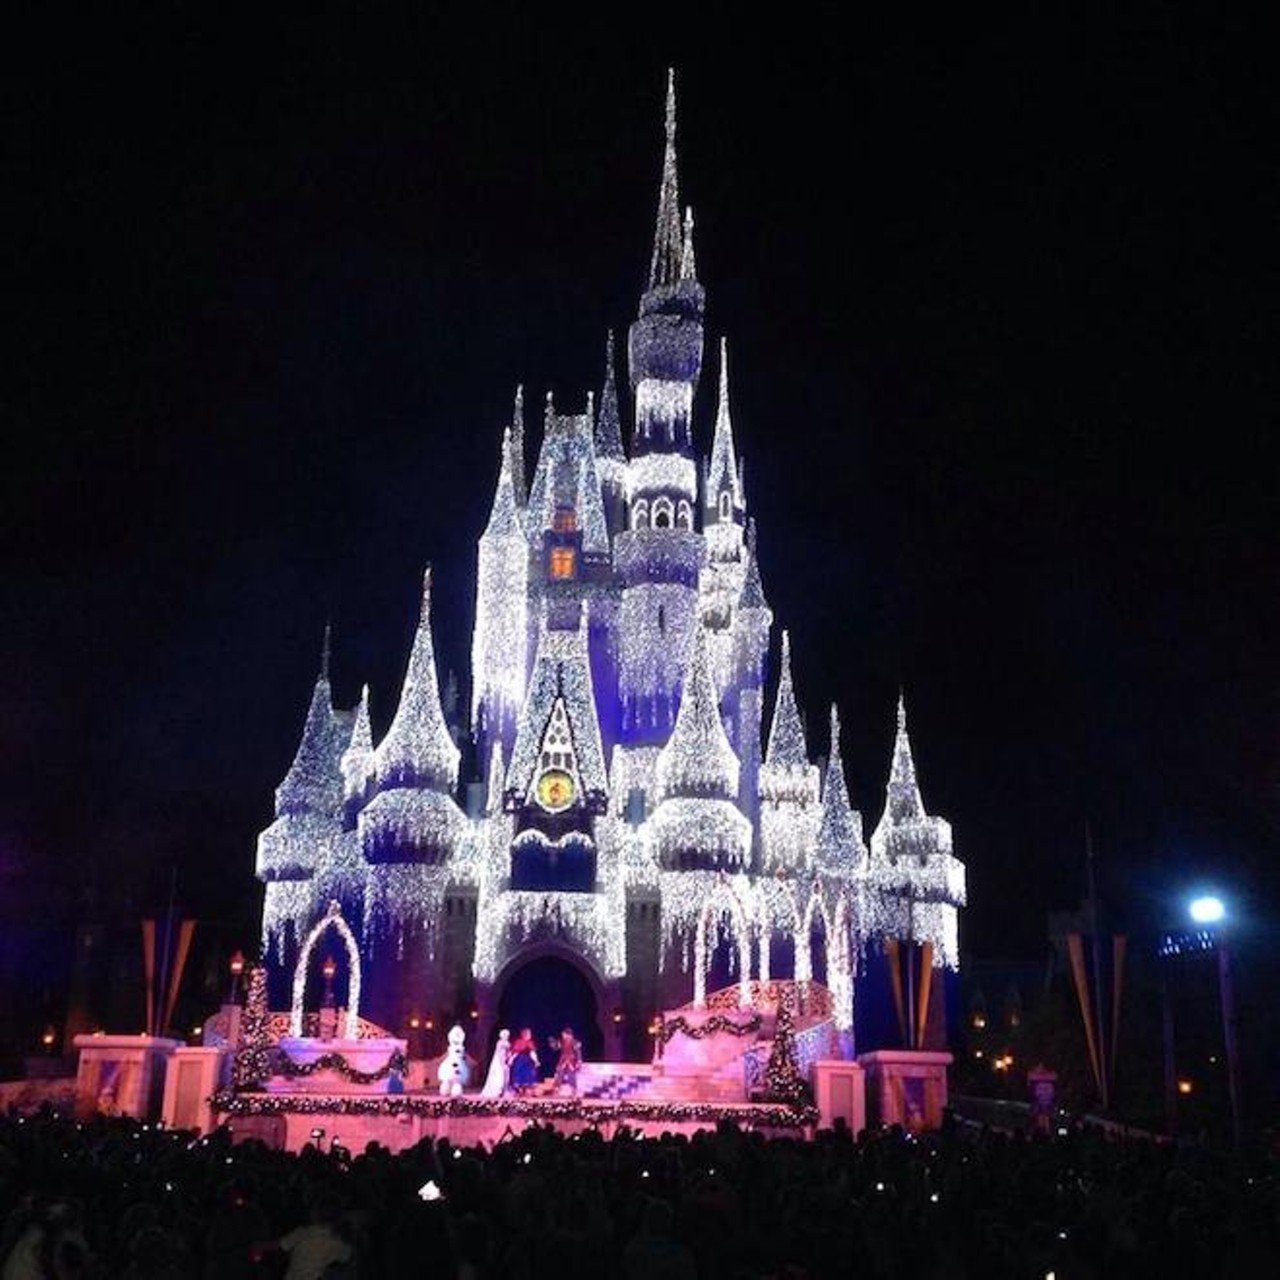 Elsa froze Cinderella's CastleImage via Visit Orlando